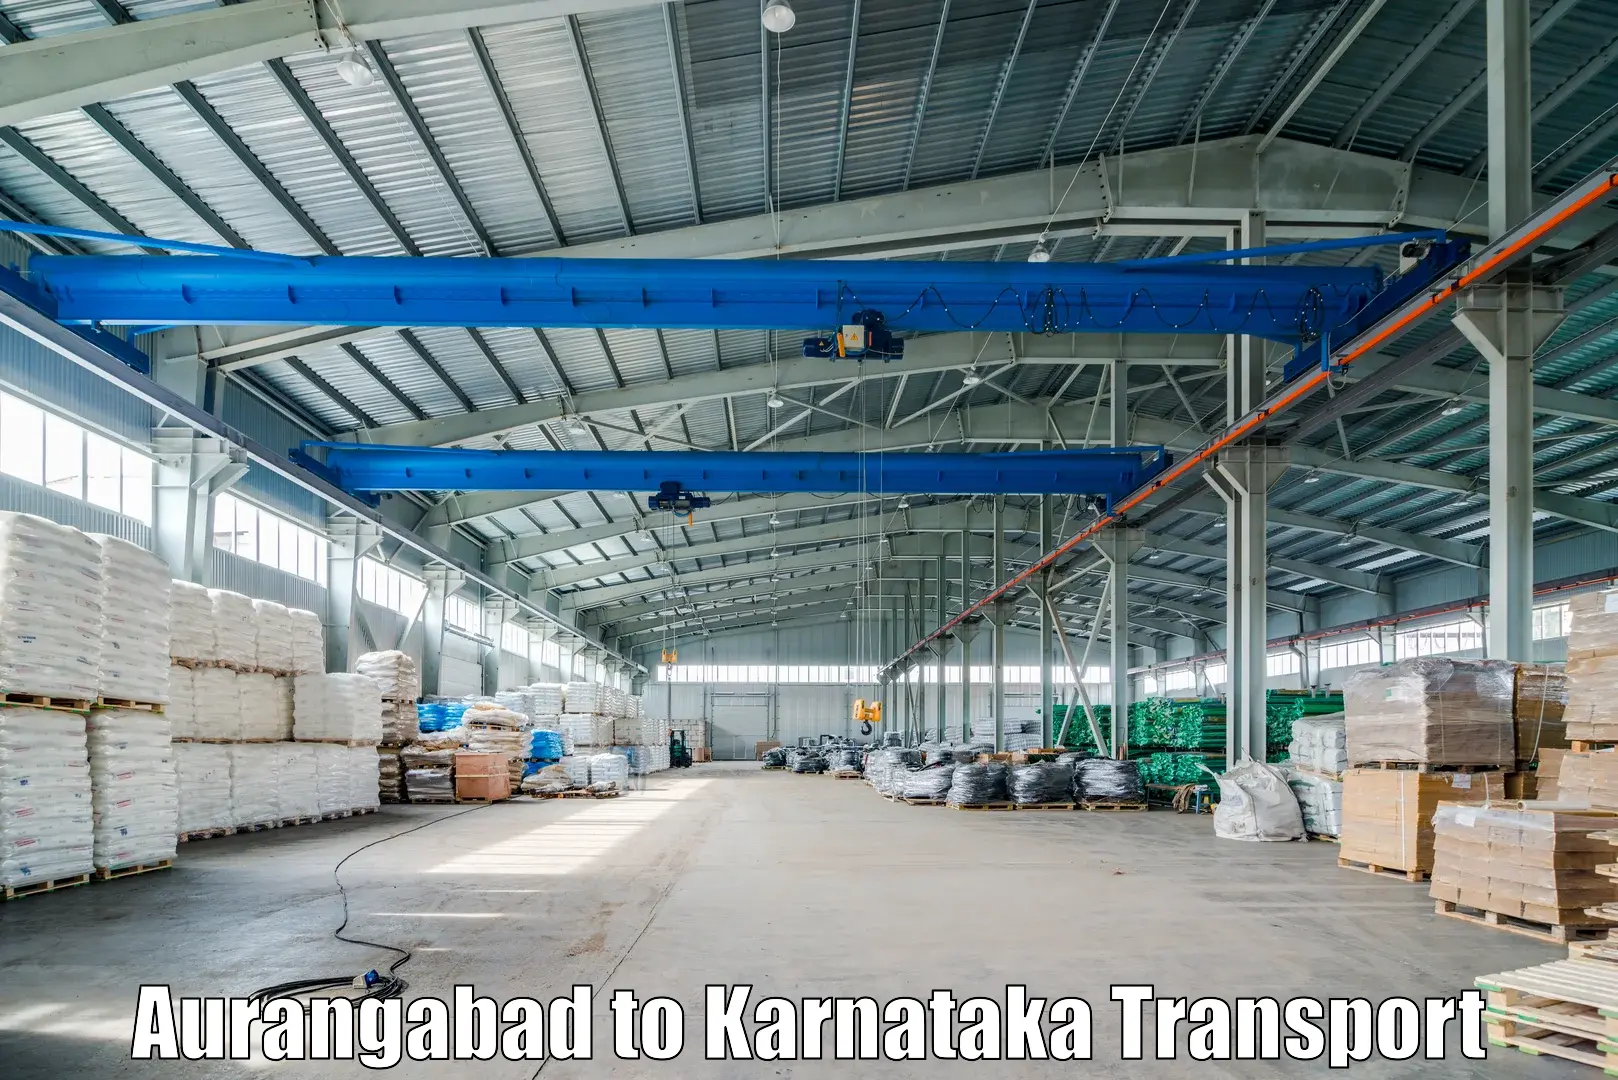 Transport in sharing Aurangabad to Basavana Bagewadi